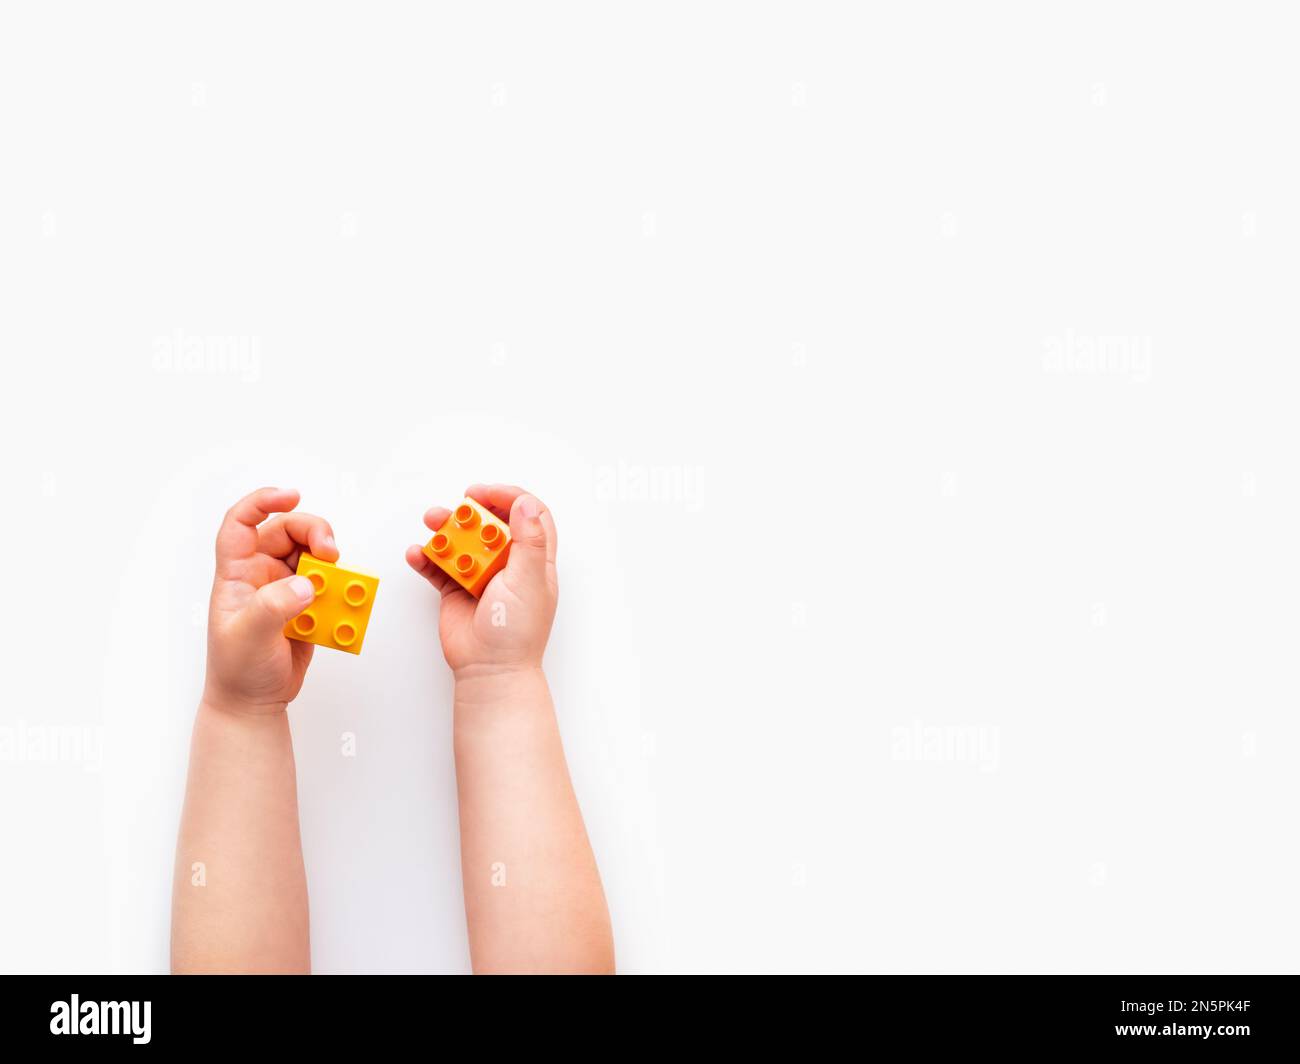 Das Kind beherbergt orangefarbene und blaue Bausteine in der Faust. Kinderhände mit Ziegelspielzeug auf weißem Hintergrund. Pädagogisches Spielzeug, flach liegend, Draufsicht. Stockfoto